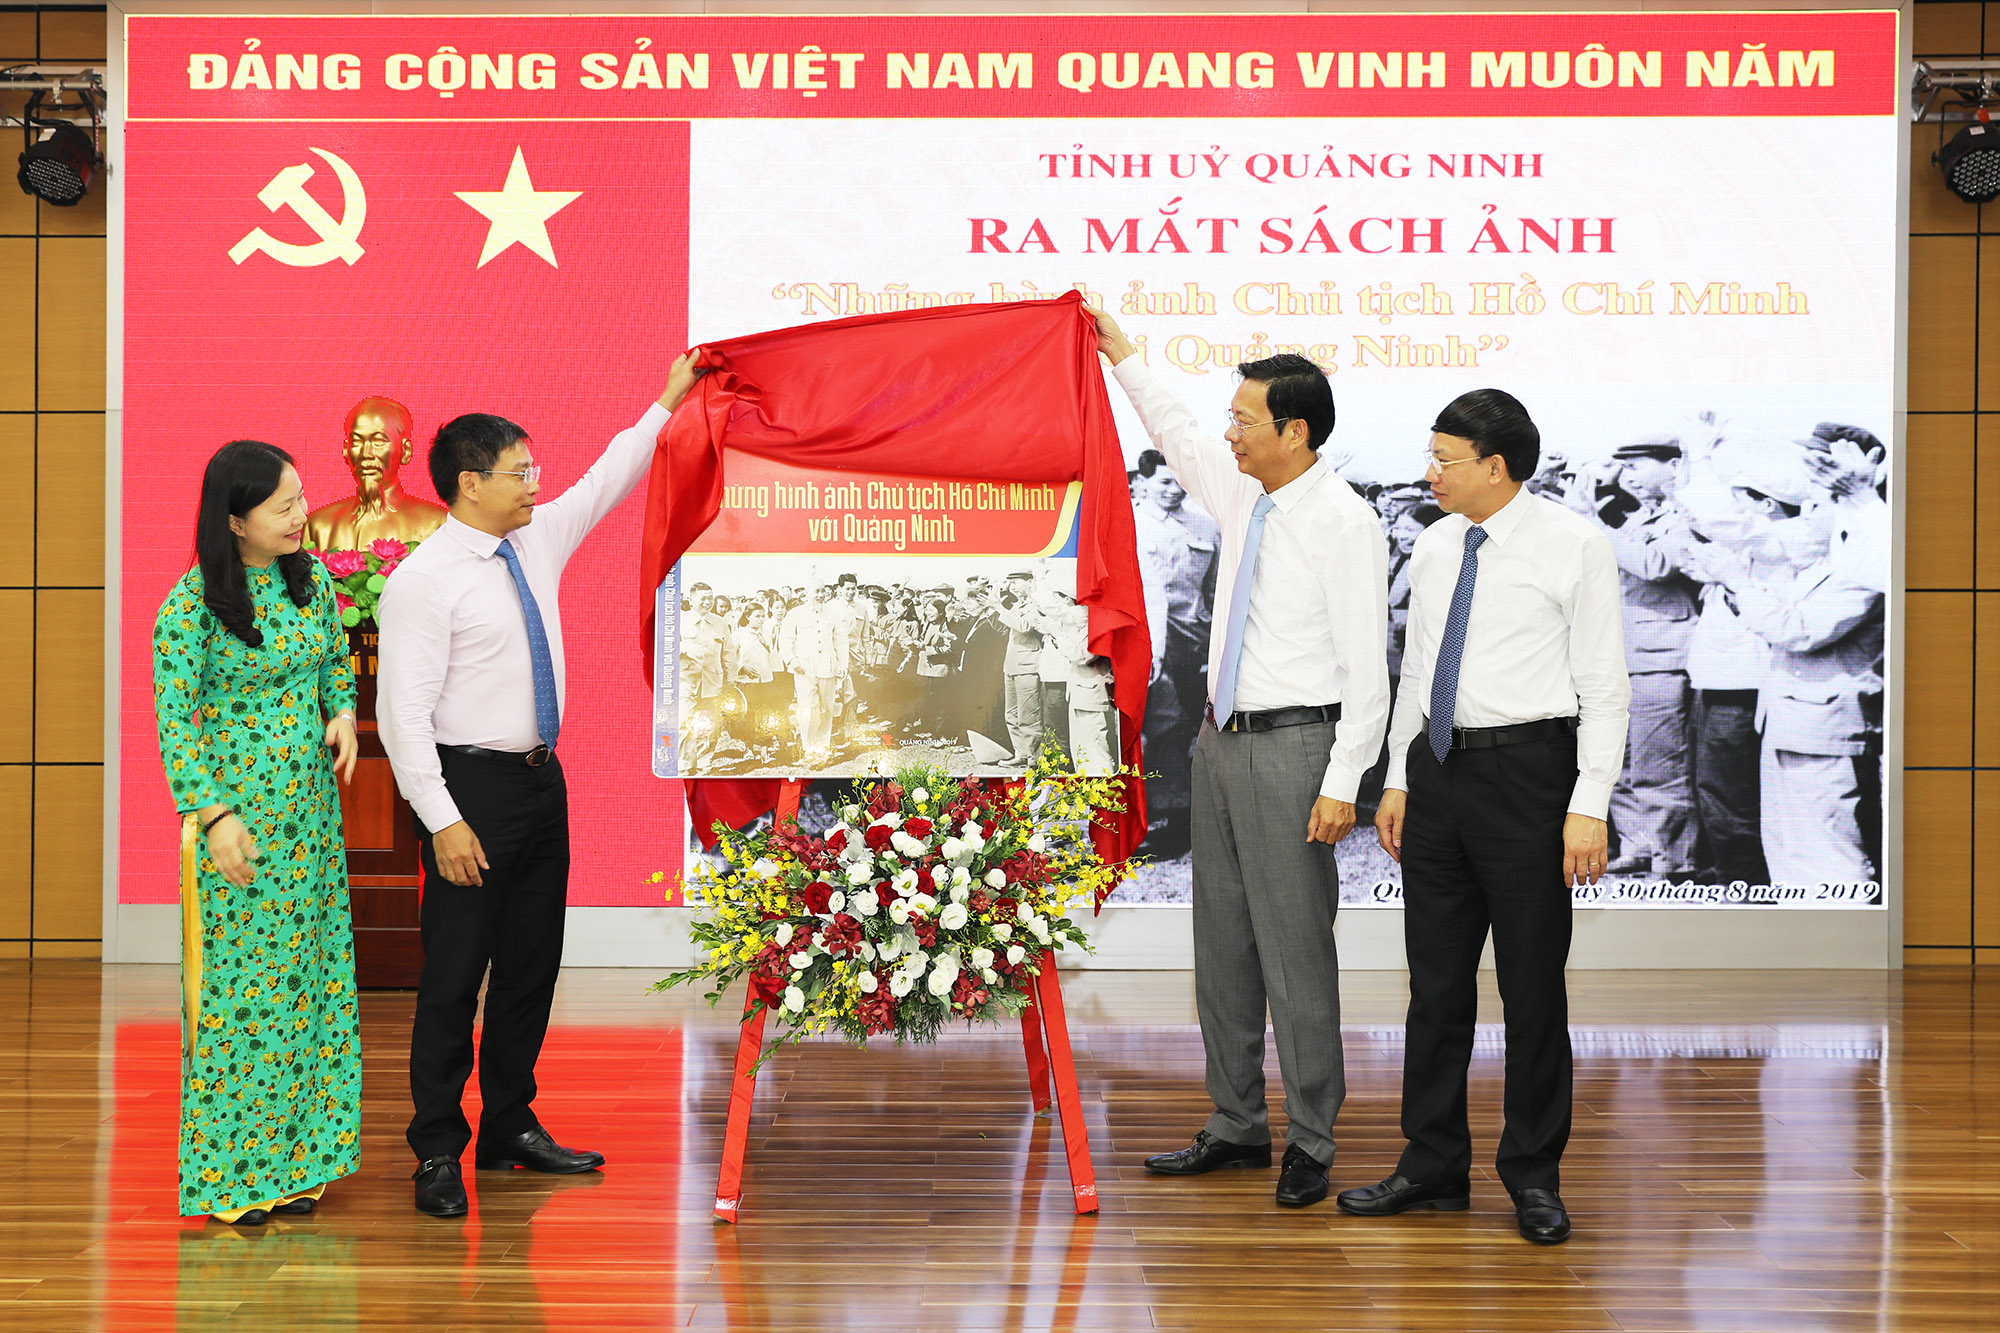 Ra mắt sách ảnh Chủ tịch Hồ Chí Minh với Quảng Ninh